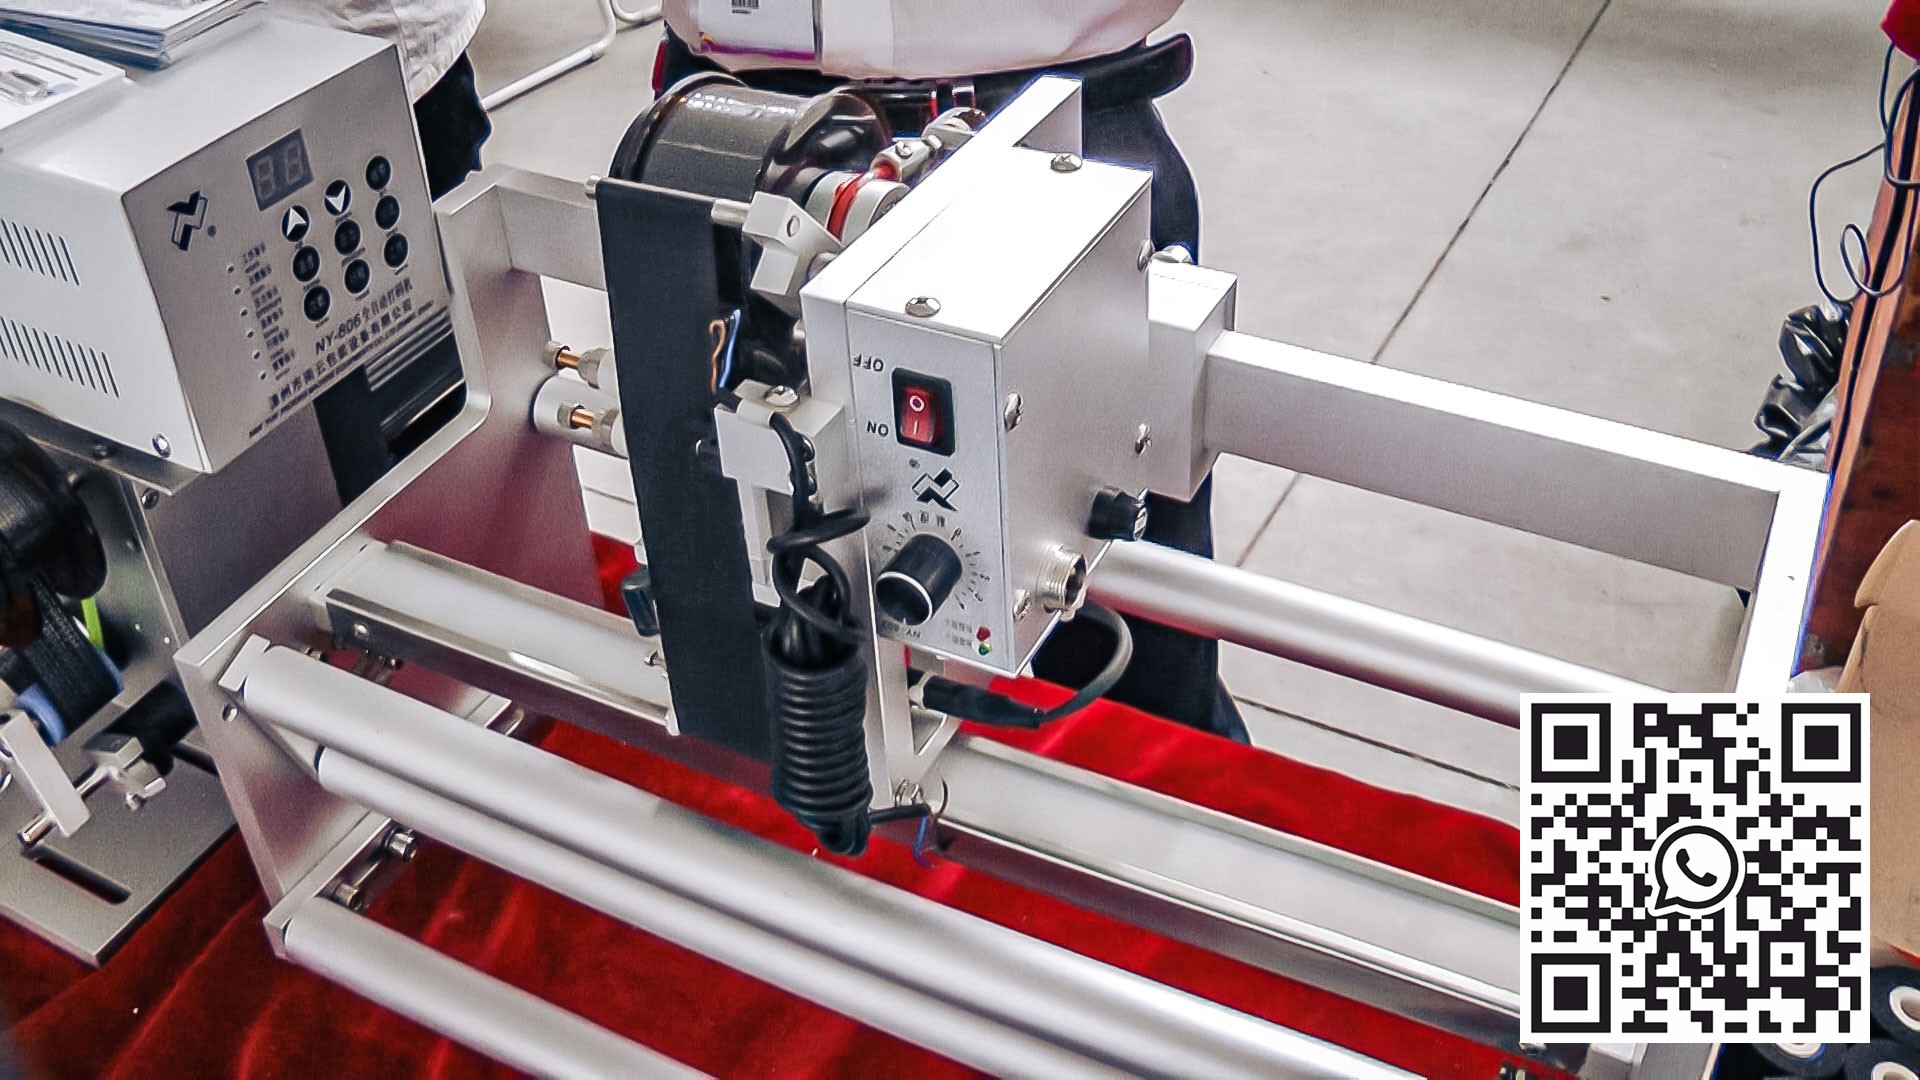 Automatyczny sprzęt drukujący datę ważności i datę na opakowaniach w produkcji farmaceutycznej